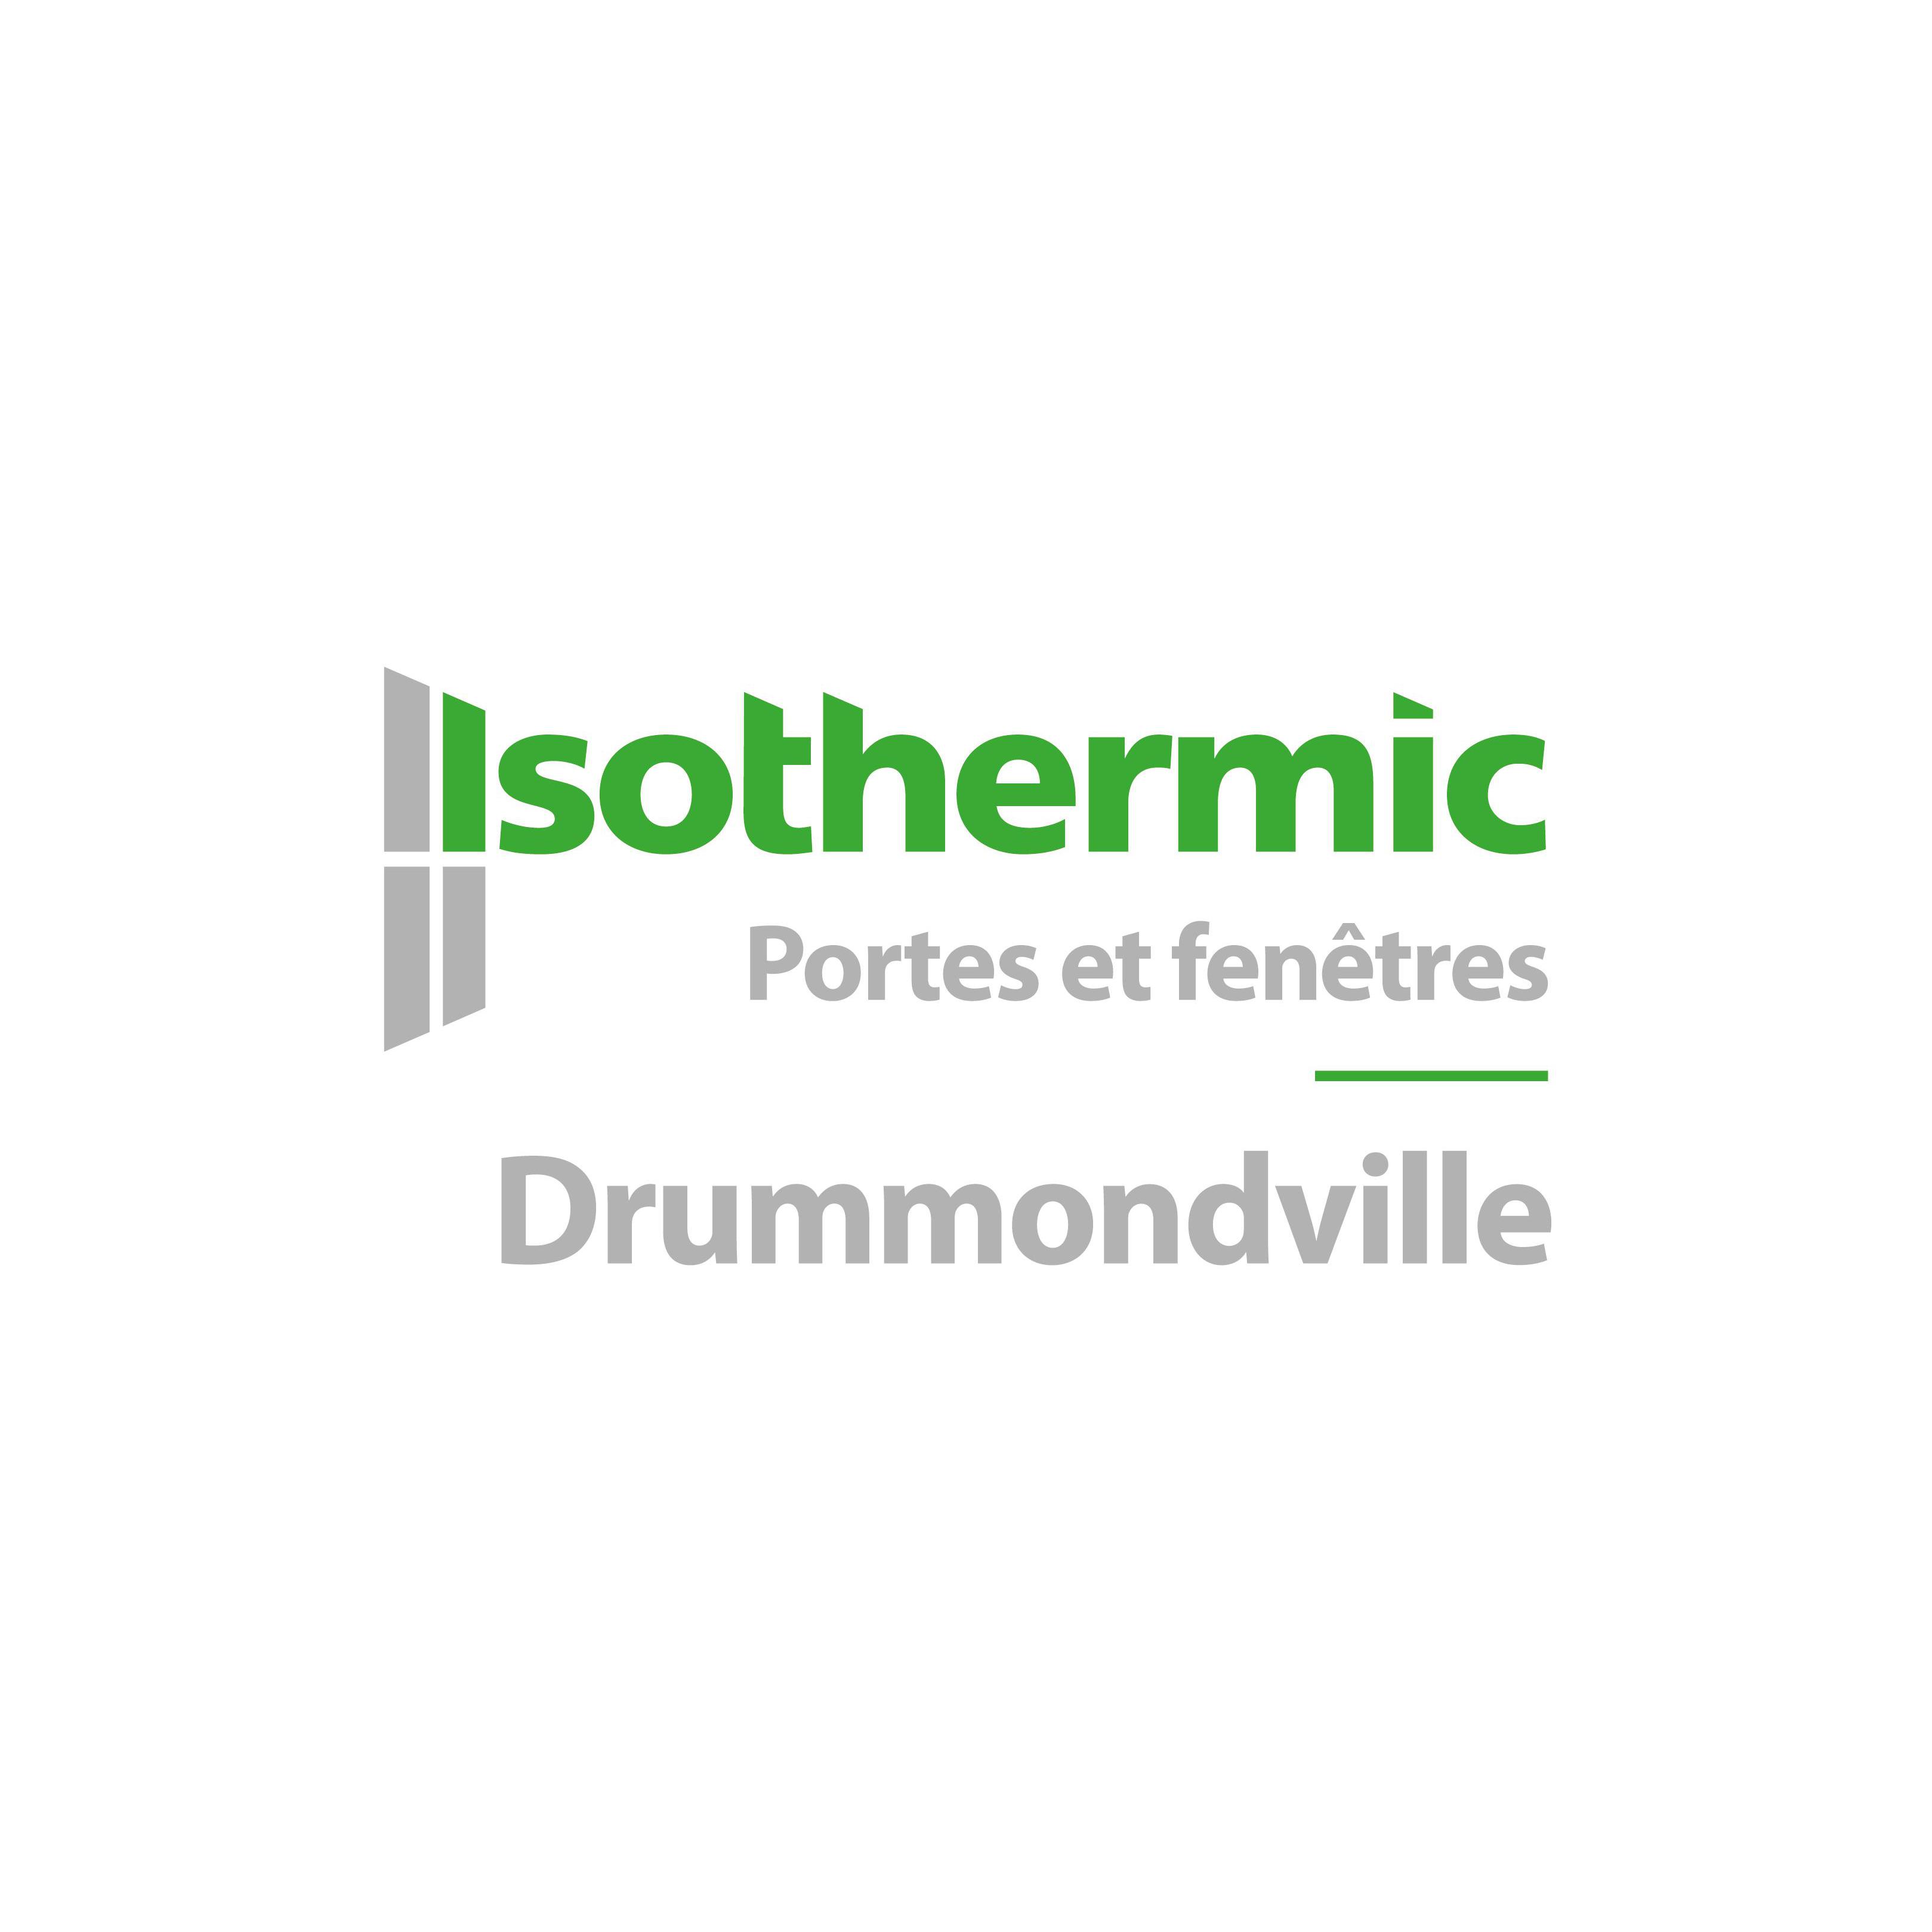 Isothermic portes et fenêtres | Drummondville